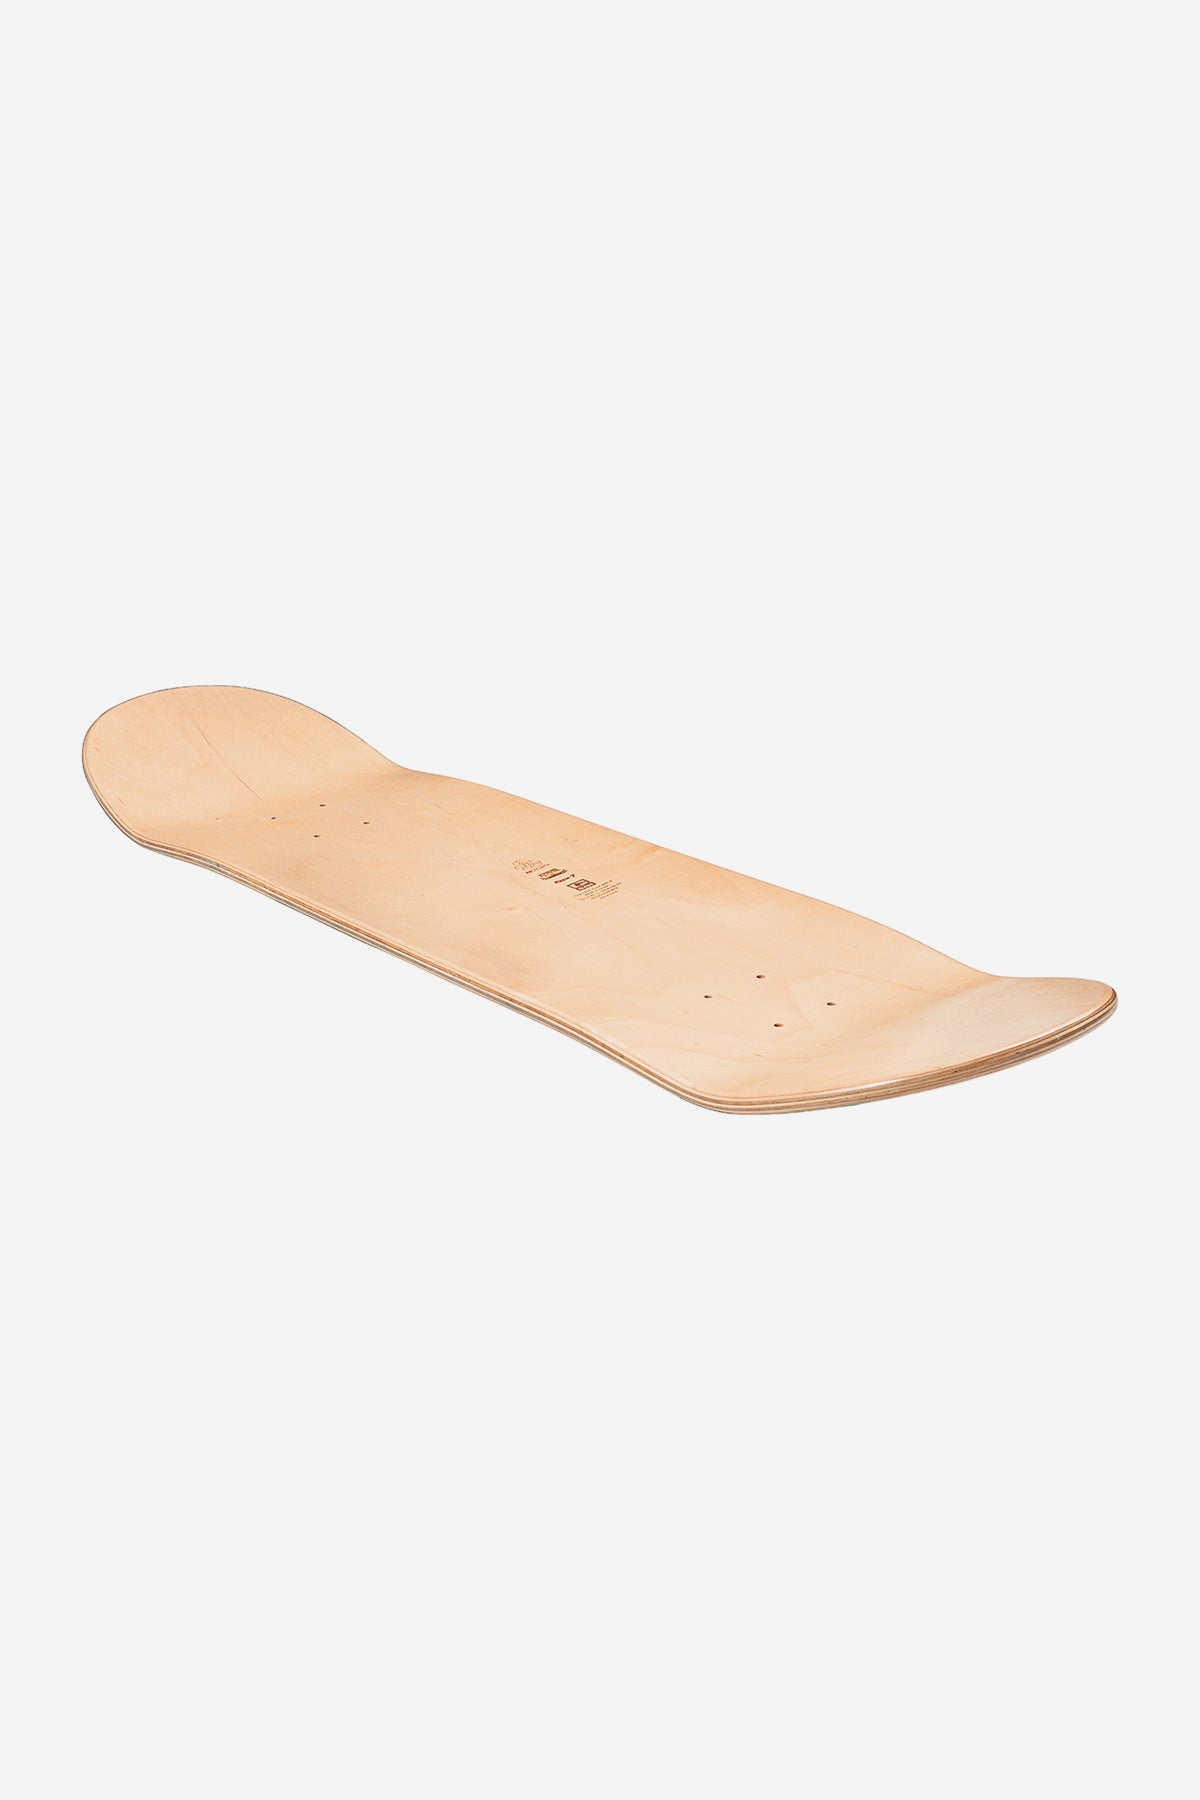 Globe - Goodstock - Clay - 8.5" (en anglais) Skateboard Deck